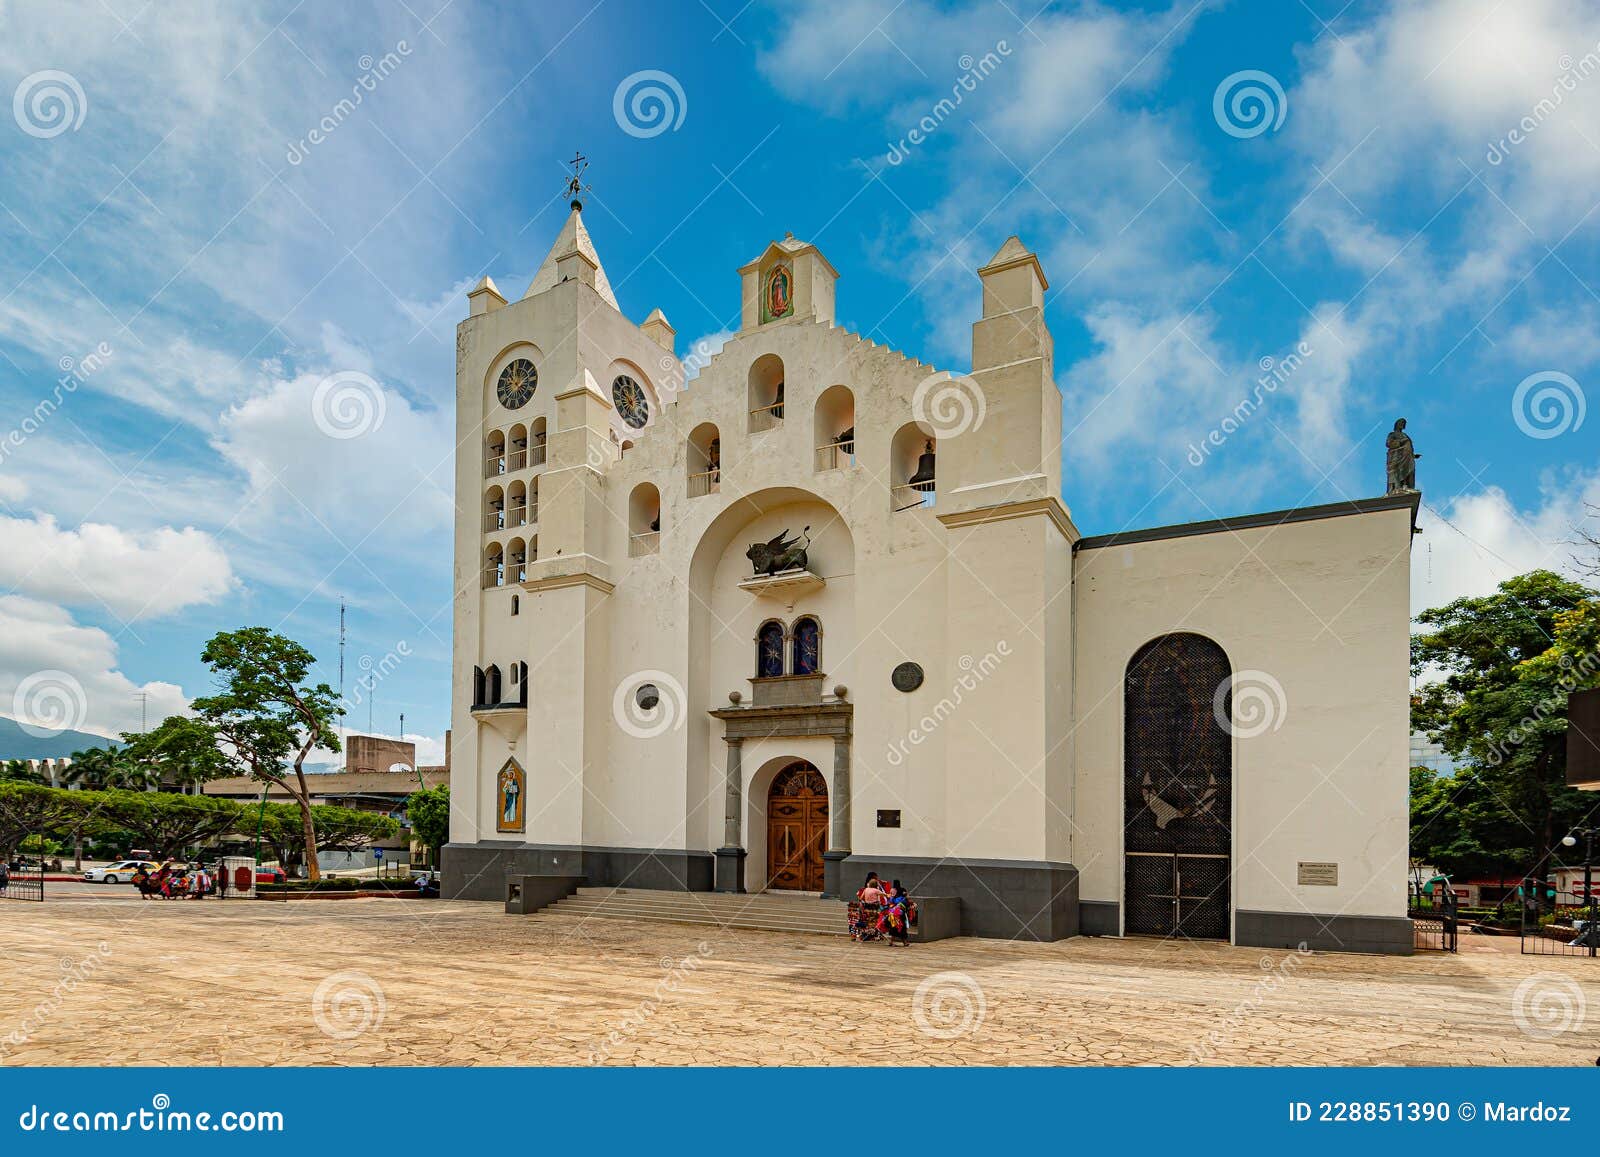 tuxtla gutierrez cathedral in chiapas state, mexico